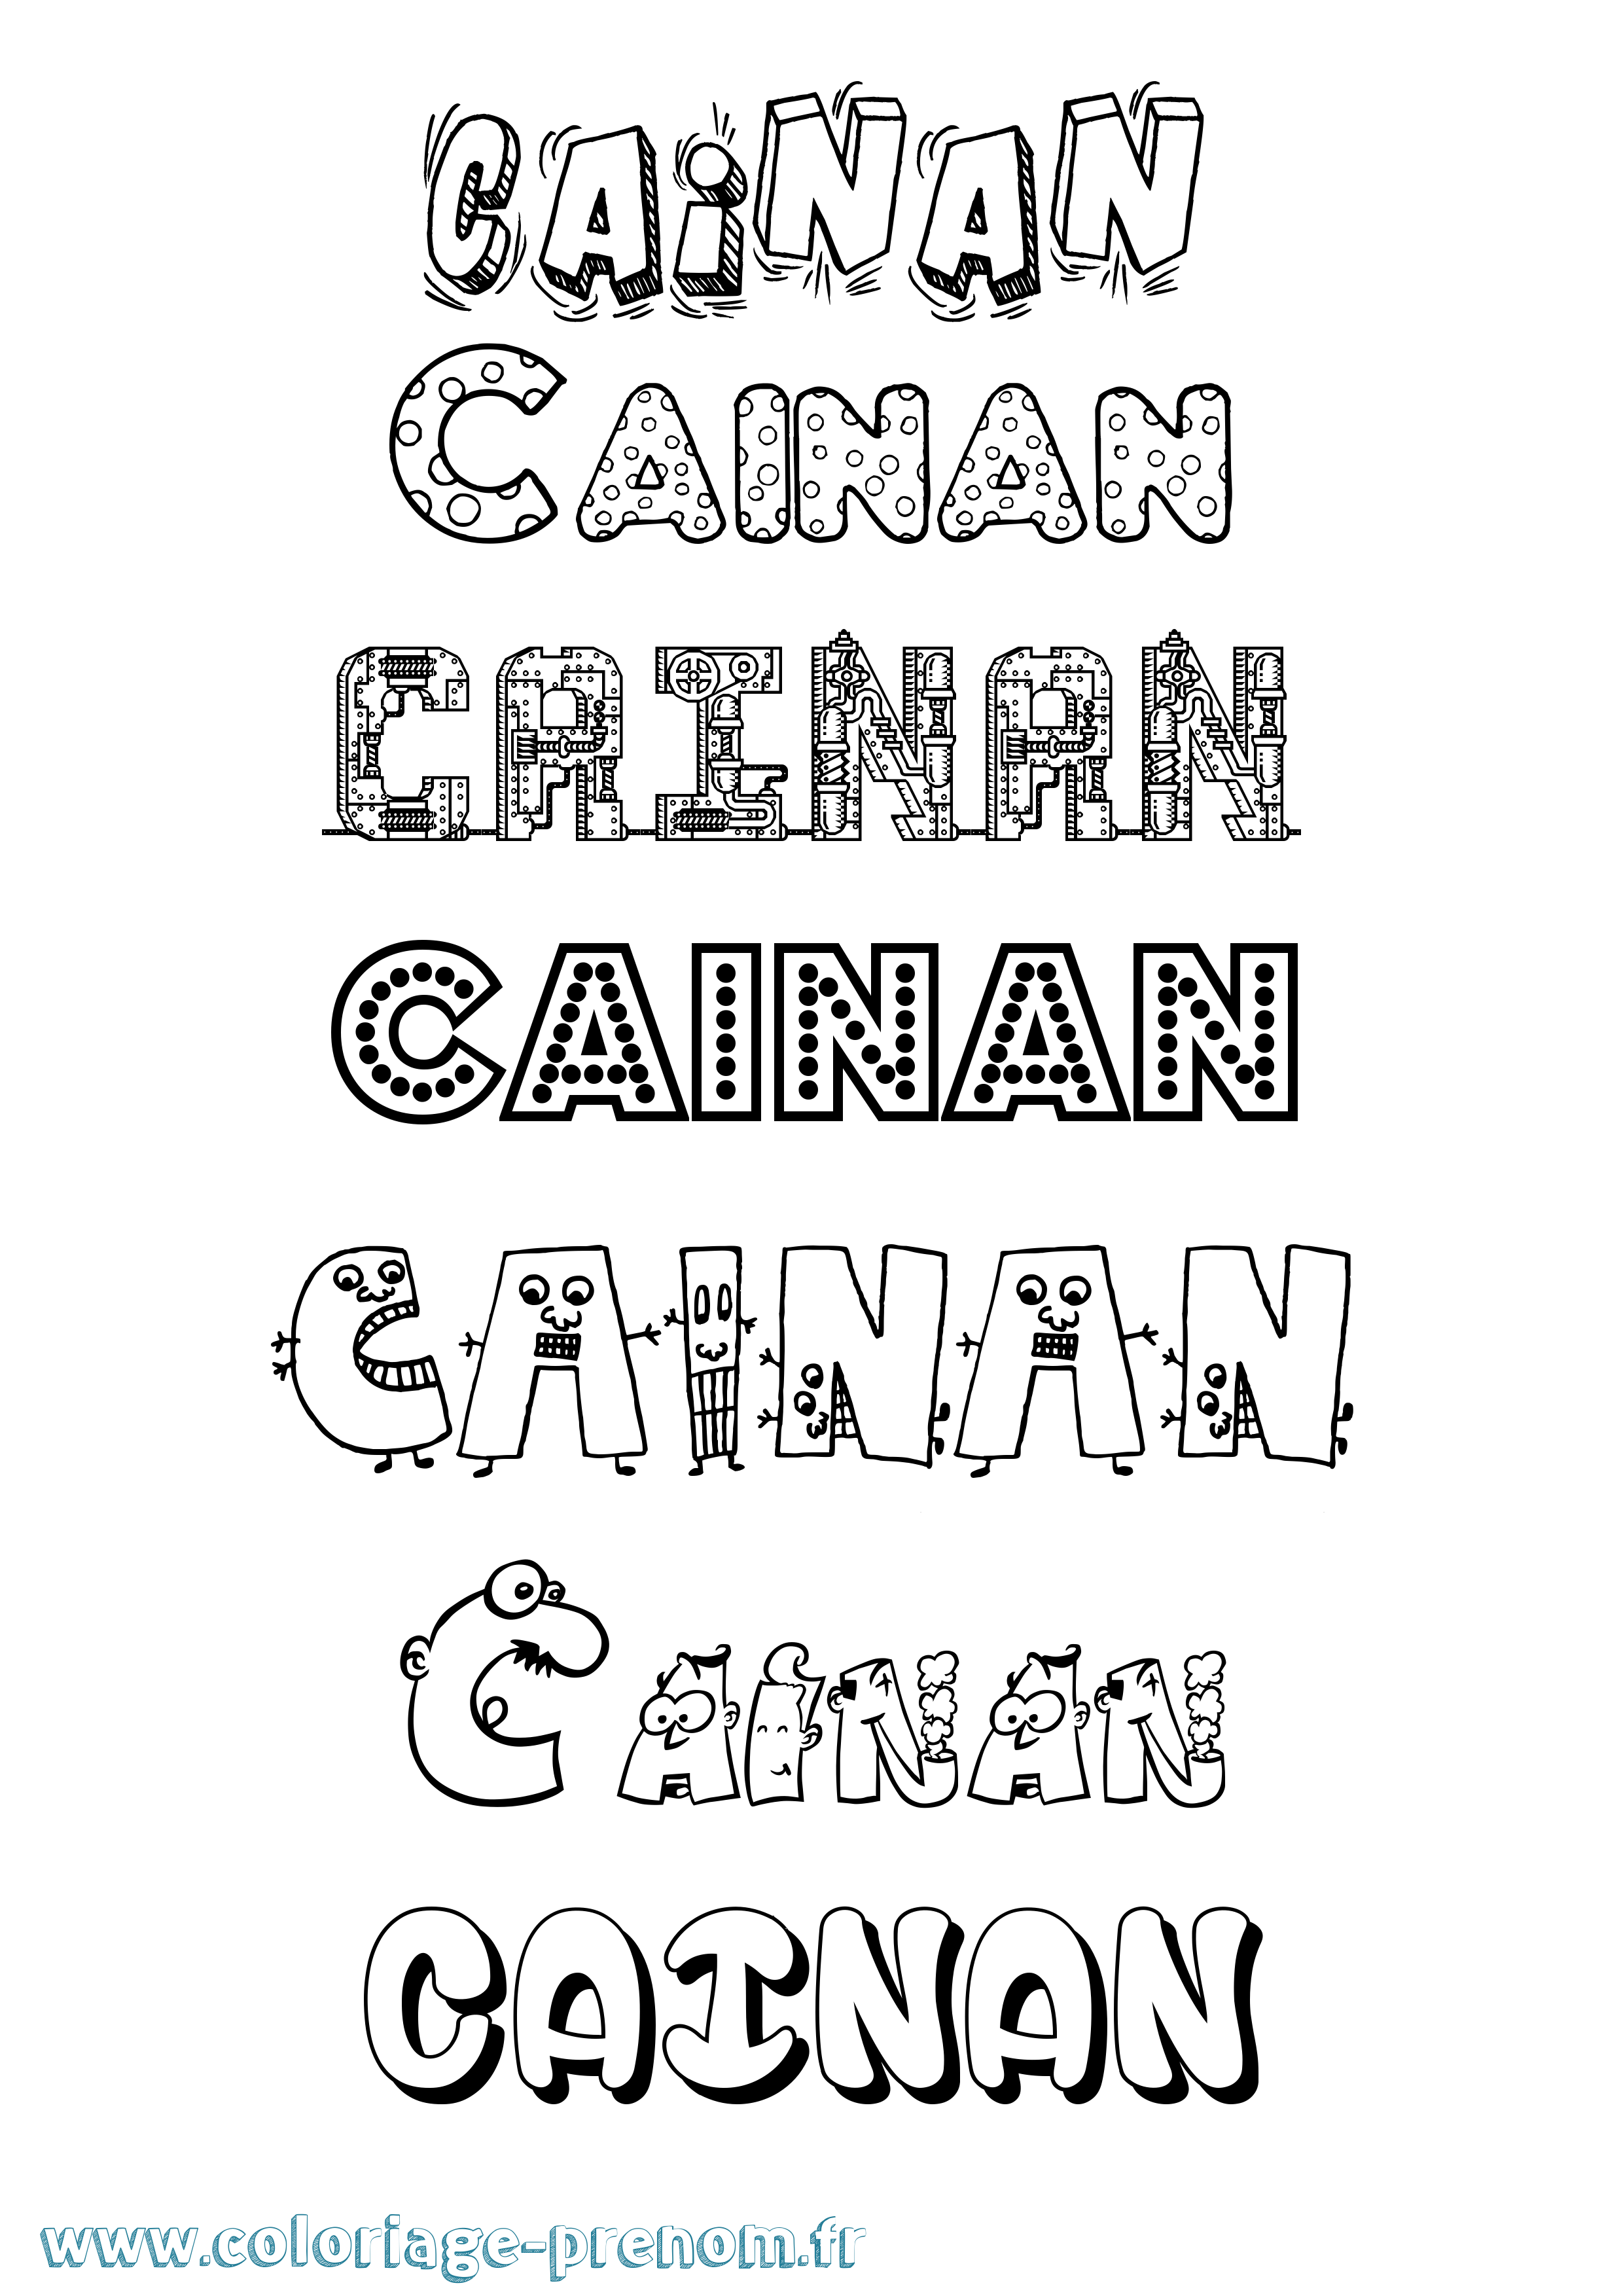 Coloriage prénom Cainan Fun